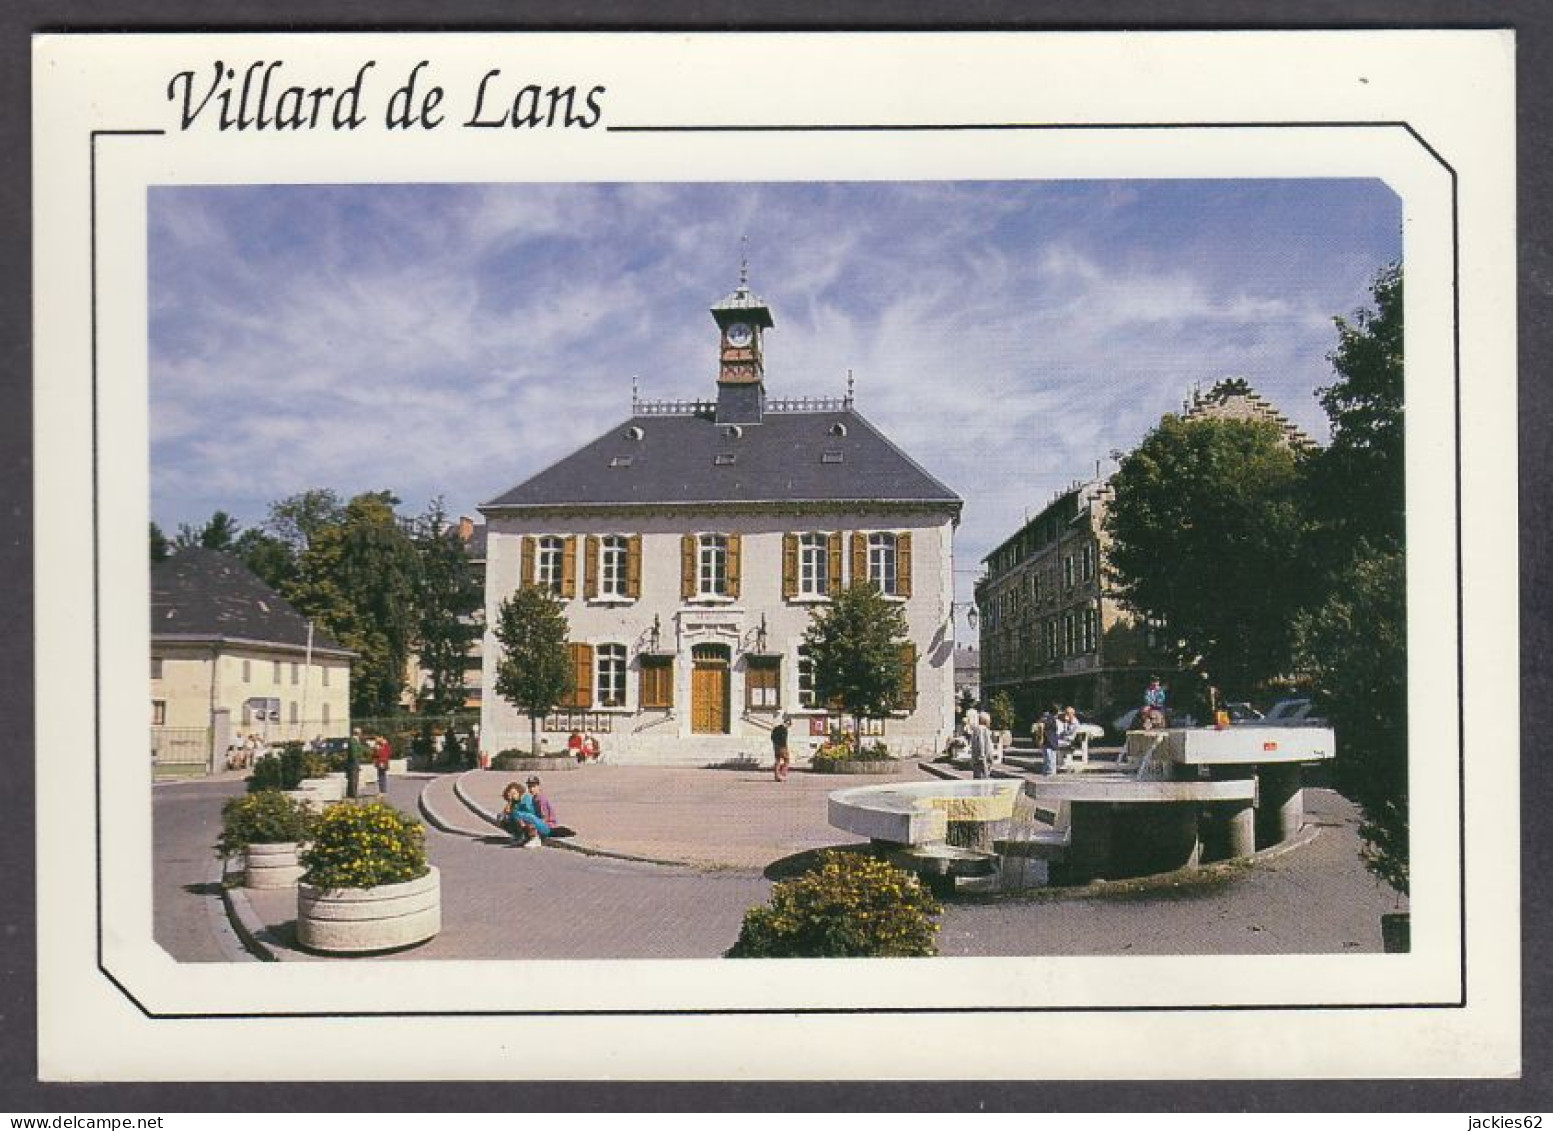 124392/ VILLARD-DE-LANS, Maison Du Patrimoine - Villard-de-Lans